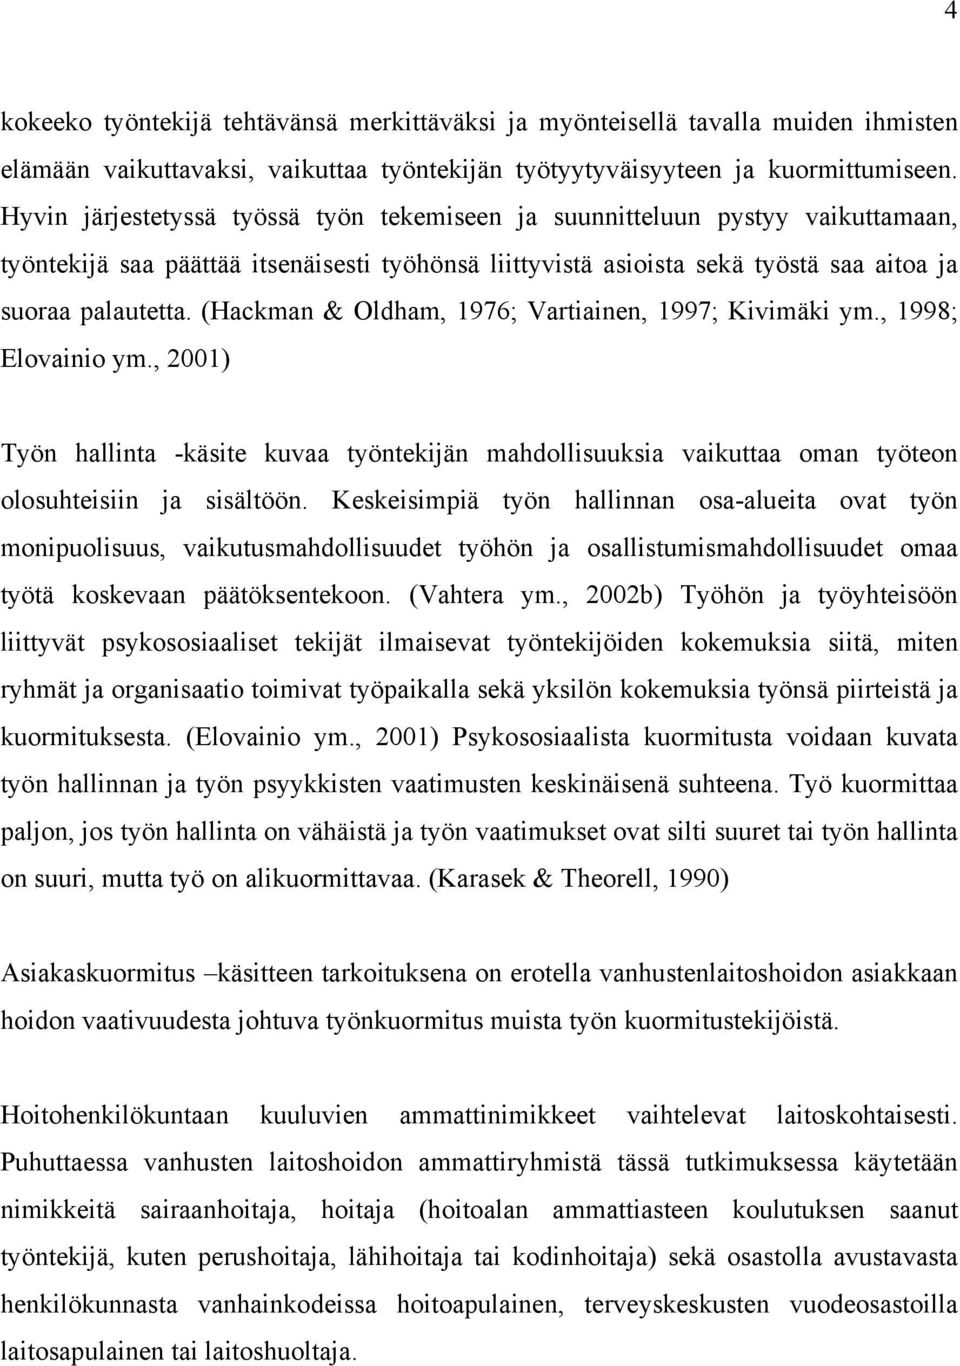 (Hackman & Oldham, 1976; Vartiainen, 1997; Kivimäki ym., 1998; Elovainio ym., 2001) Työn hallinta -käsite kuvaa työntekijän mahdollisuuksia vaikuttaa oman työteon olosuhteisiin ja sisältöön.